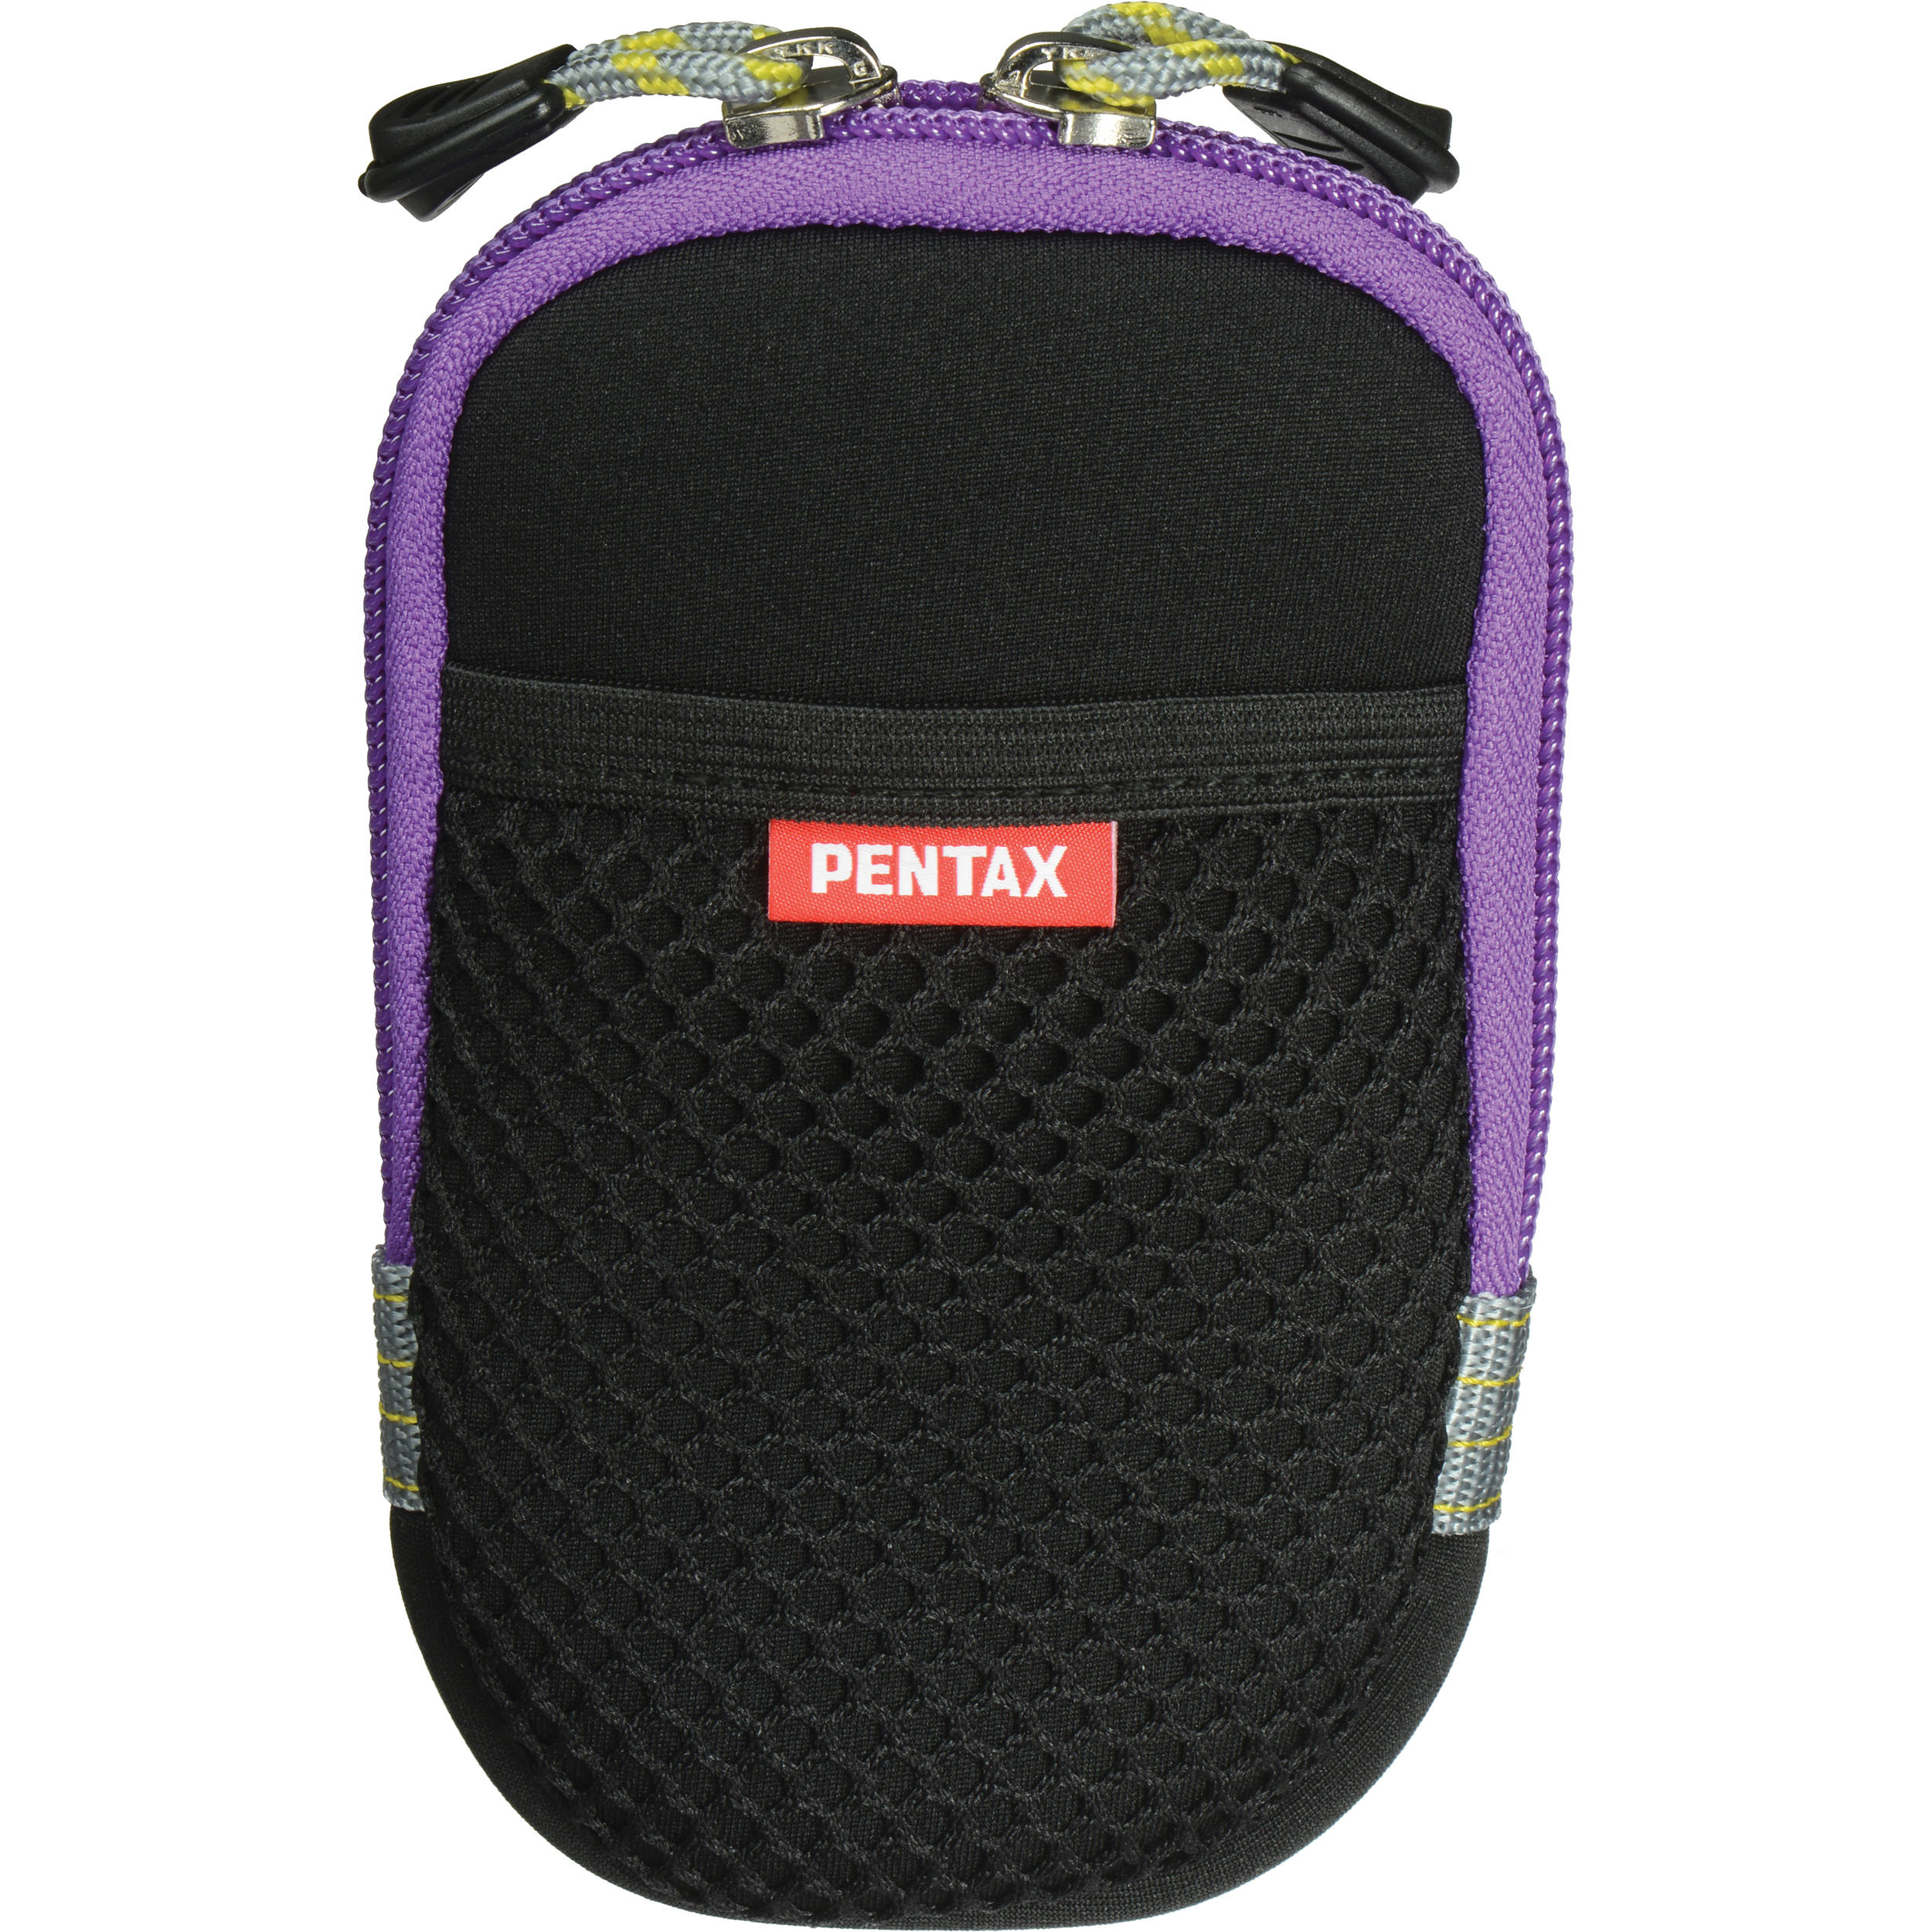 pentax camera case